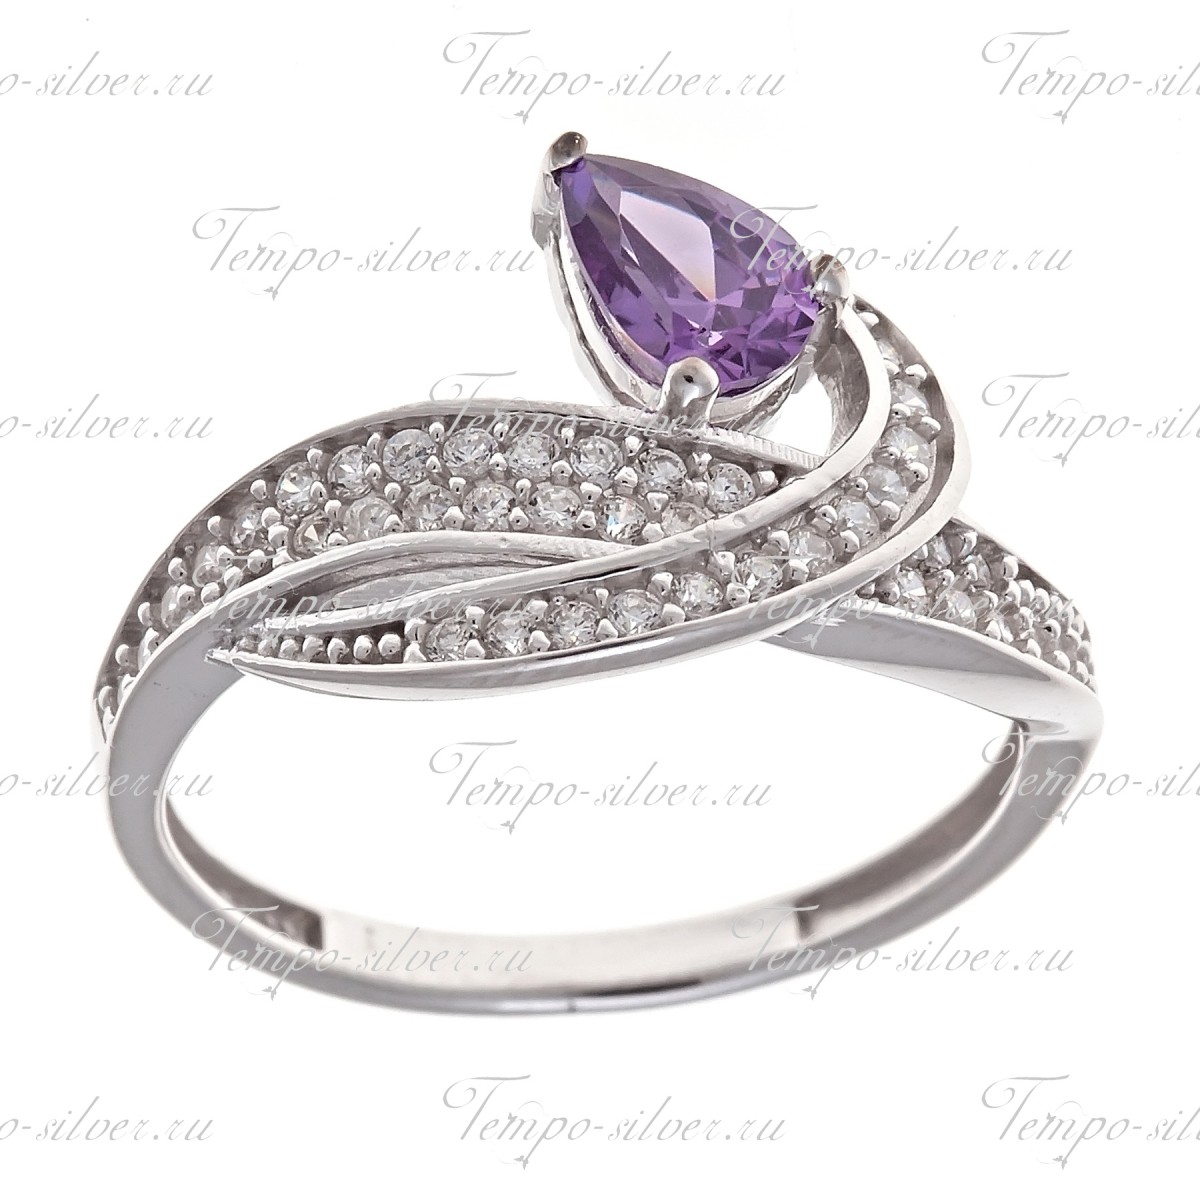 Кольцо с крупным фиолетовым камнем и россыпью белых цирконий цена